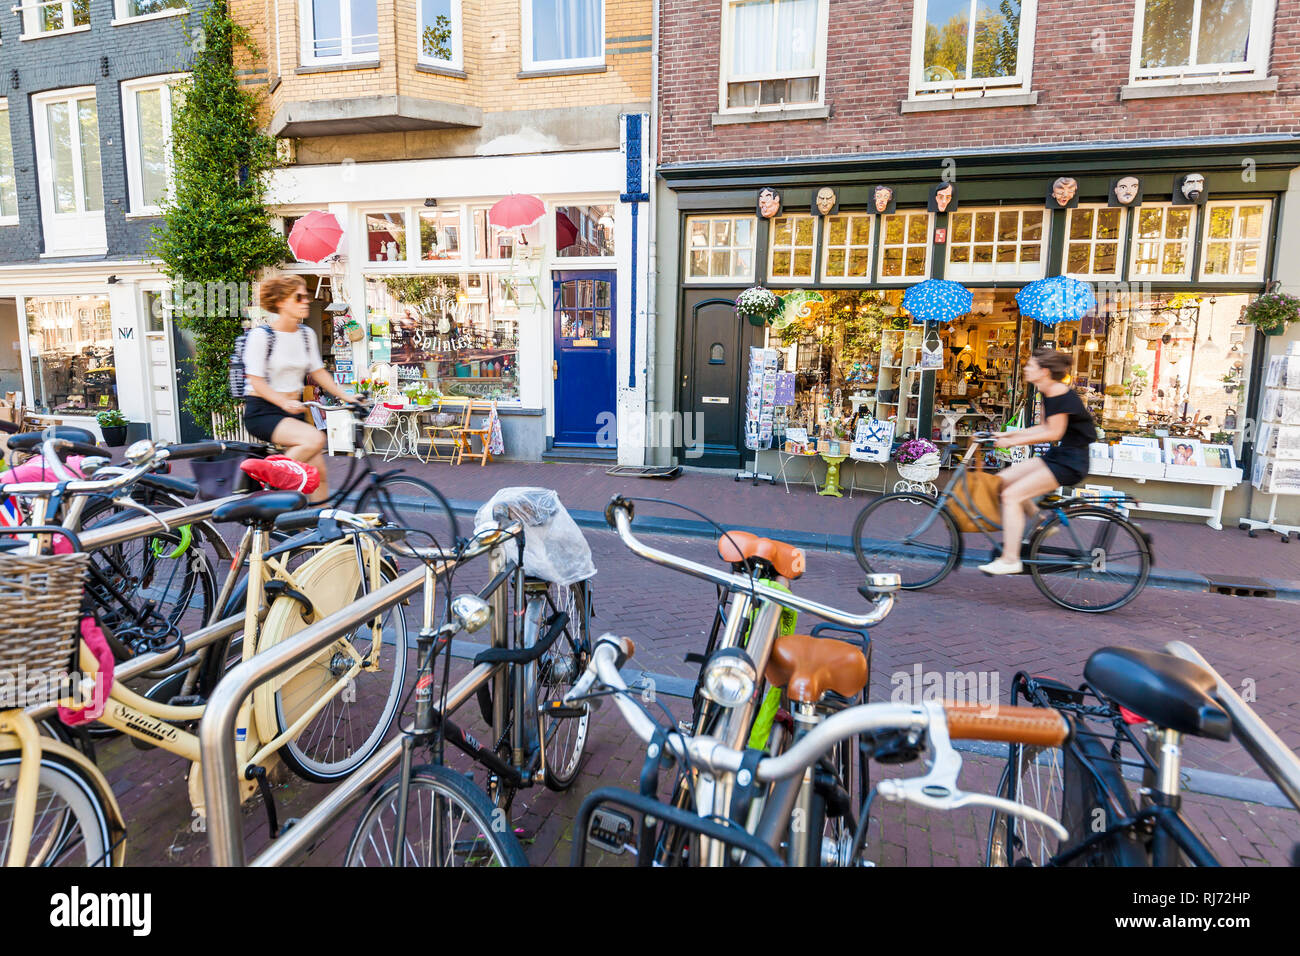 Niederlande, Amsterdam, Altstadt, Prinsengracht, verschiedene Läden, Fahrräder, Radfahrer Foto Stock